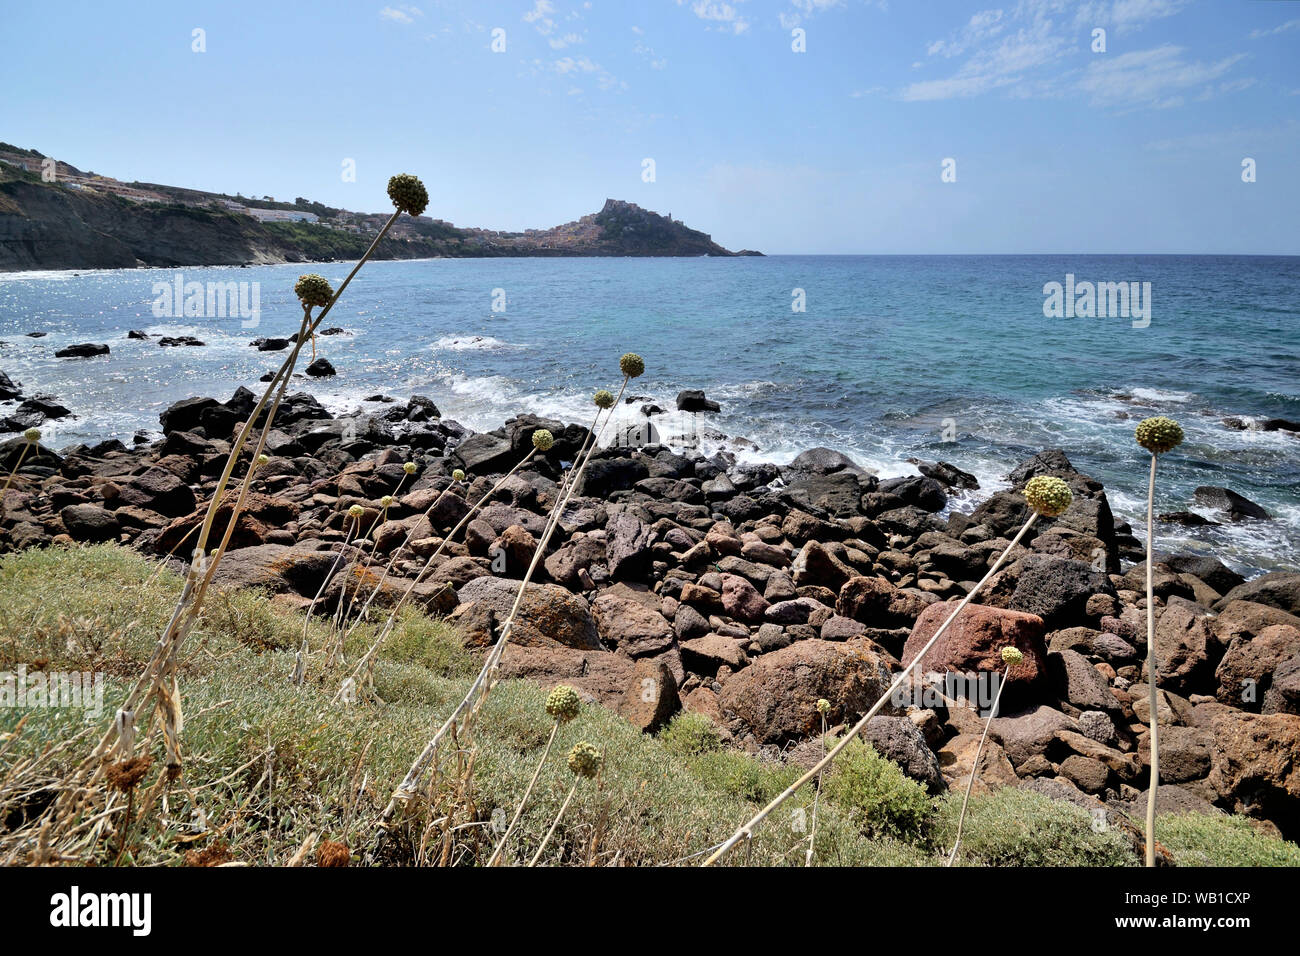 Die herrlichen Felsen Felsen der Cantareddi Strand im Norden von Sardinien an einem sonnigen Sommertag. Castelsardo Stadt auf einem Hügel im Hintergrund Stockfoto